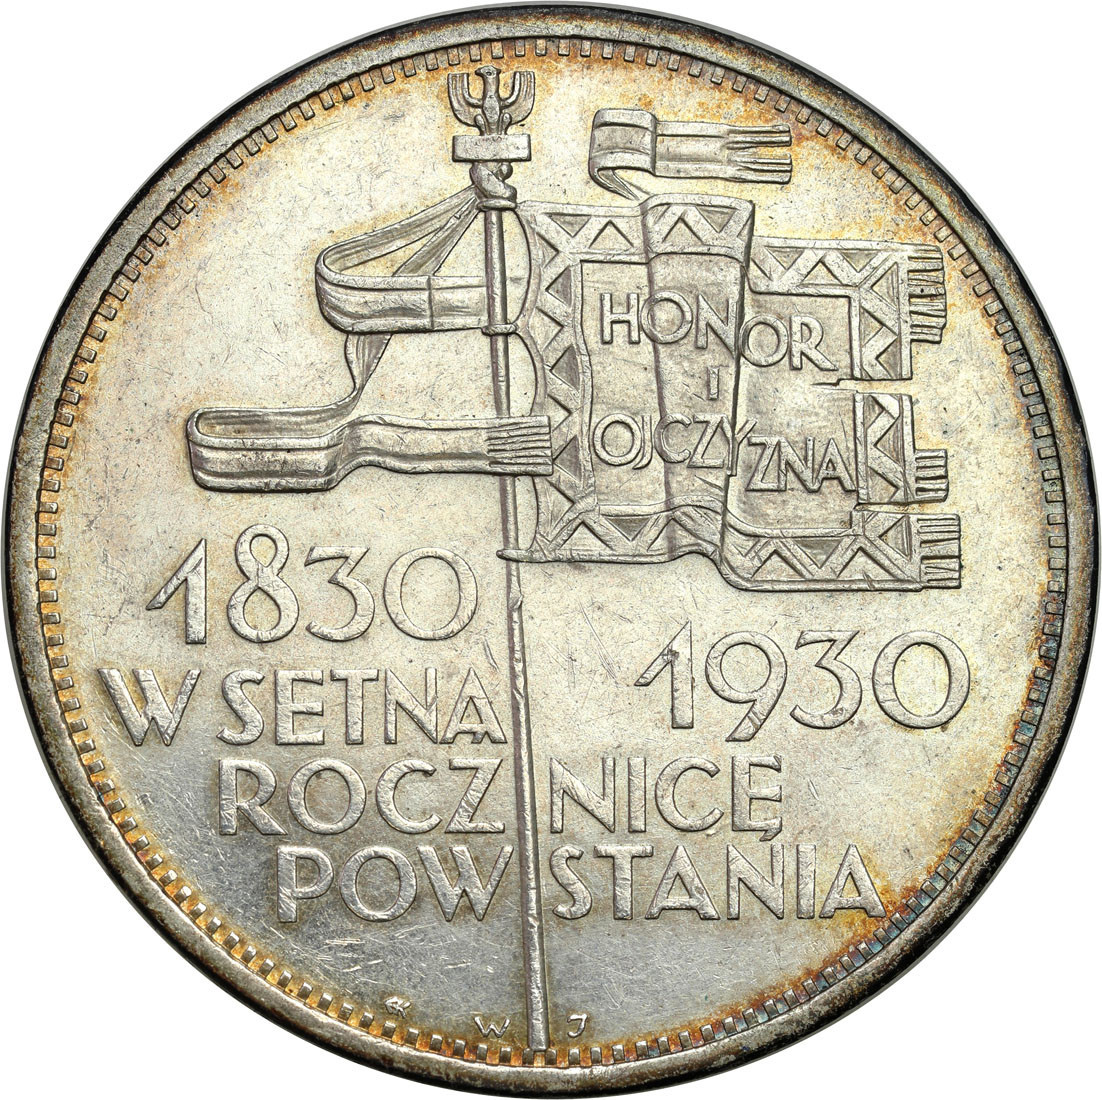  II RP. 5 złotych 1930 Sztandar